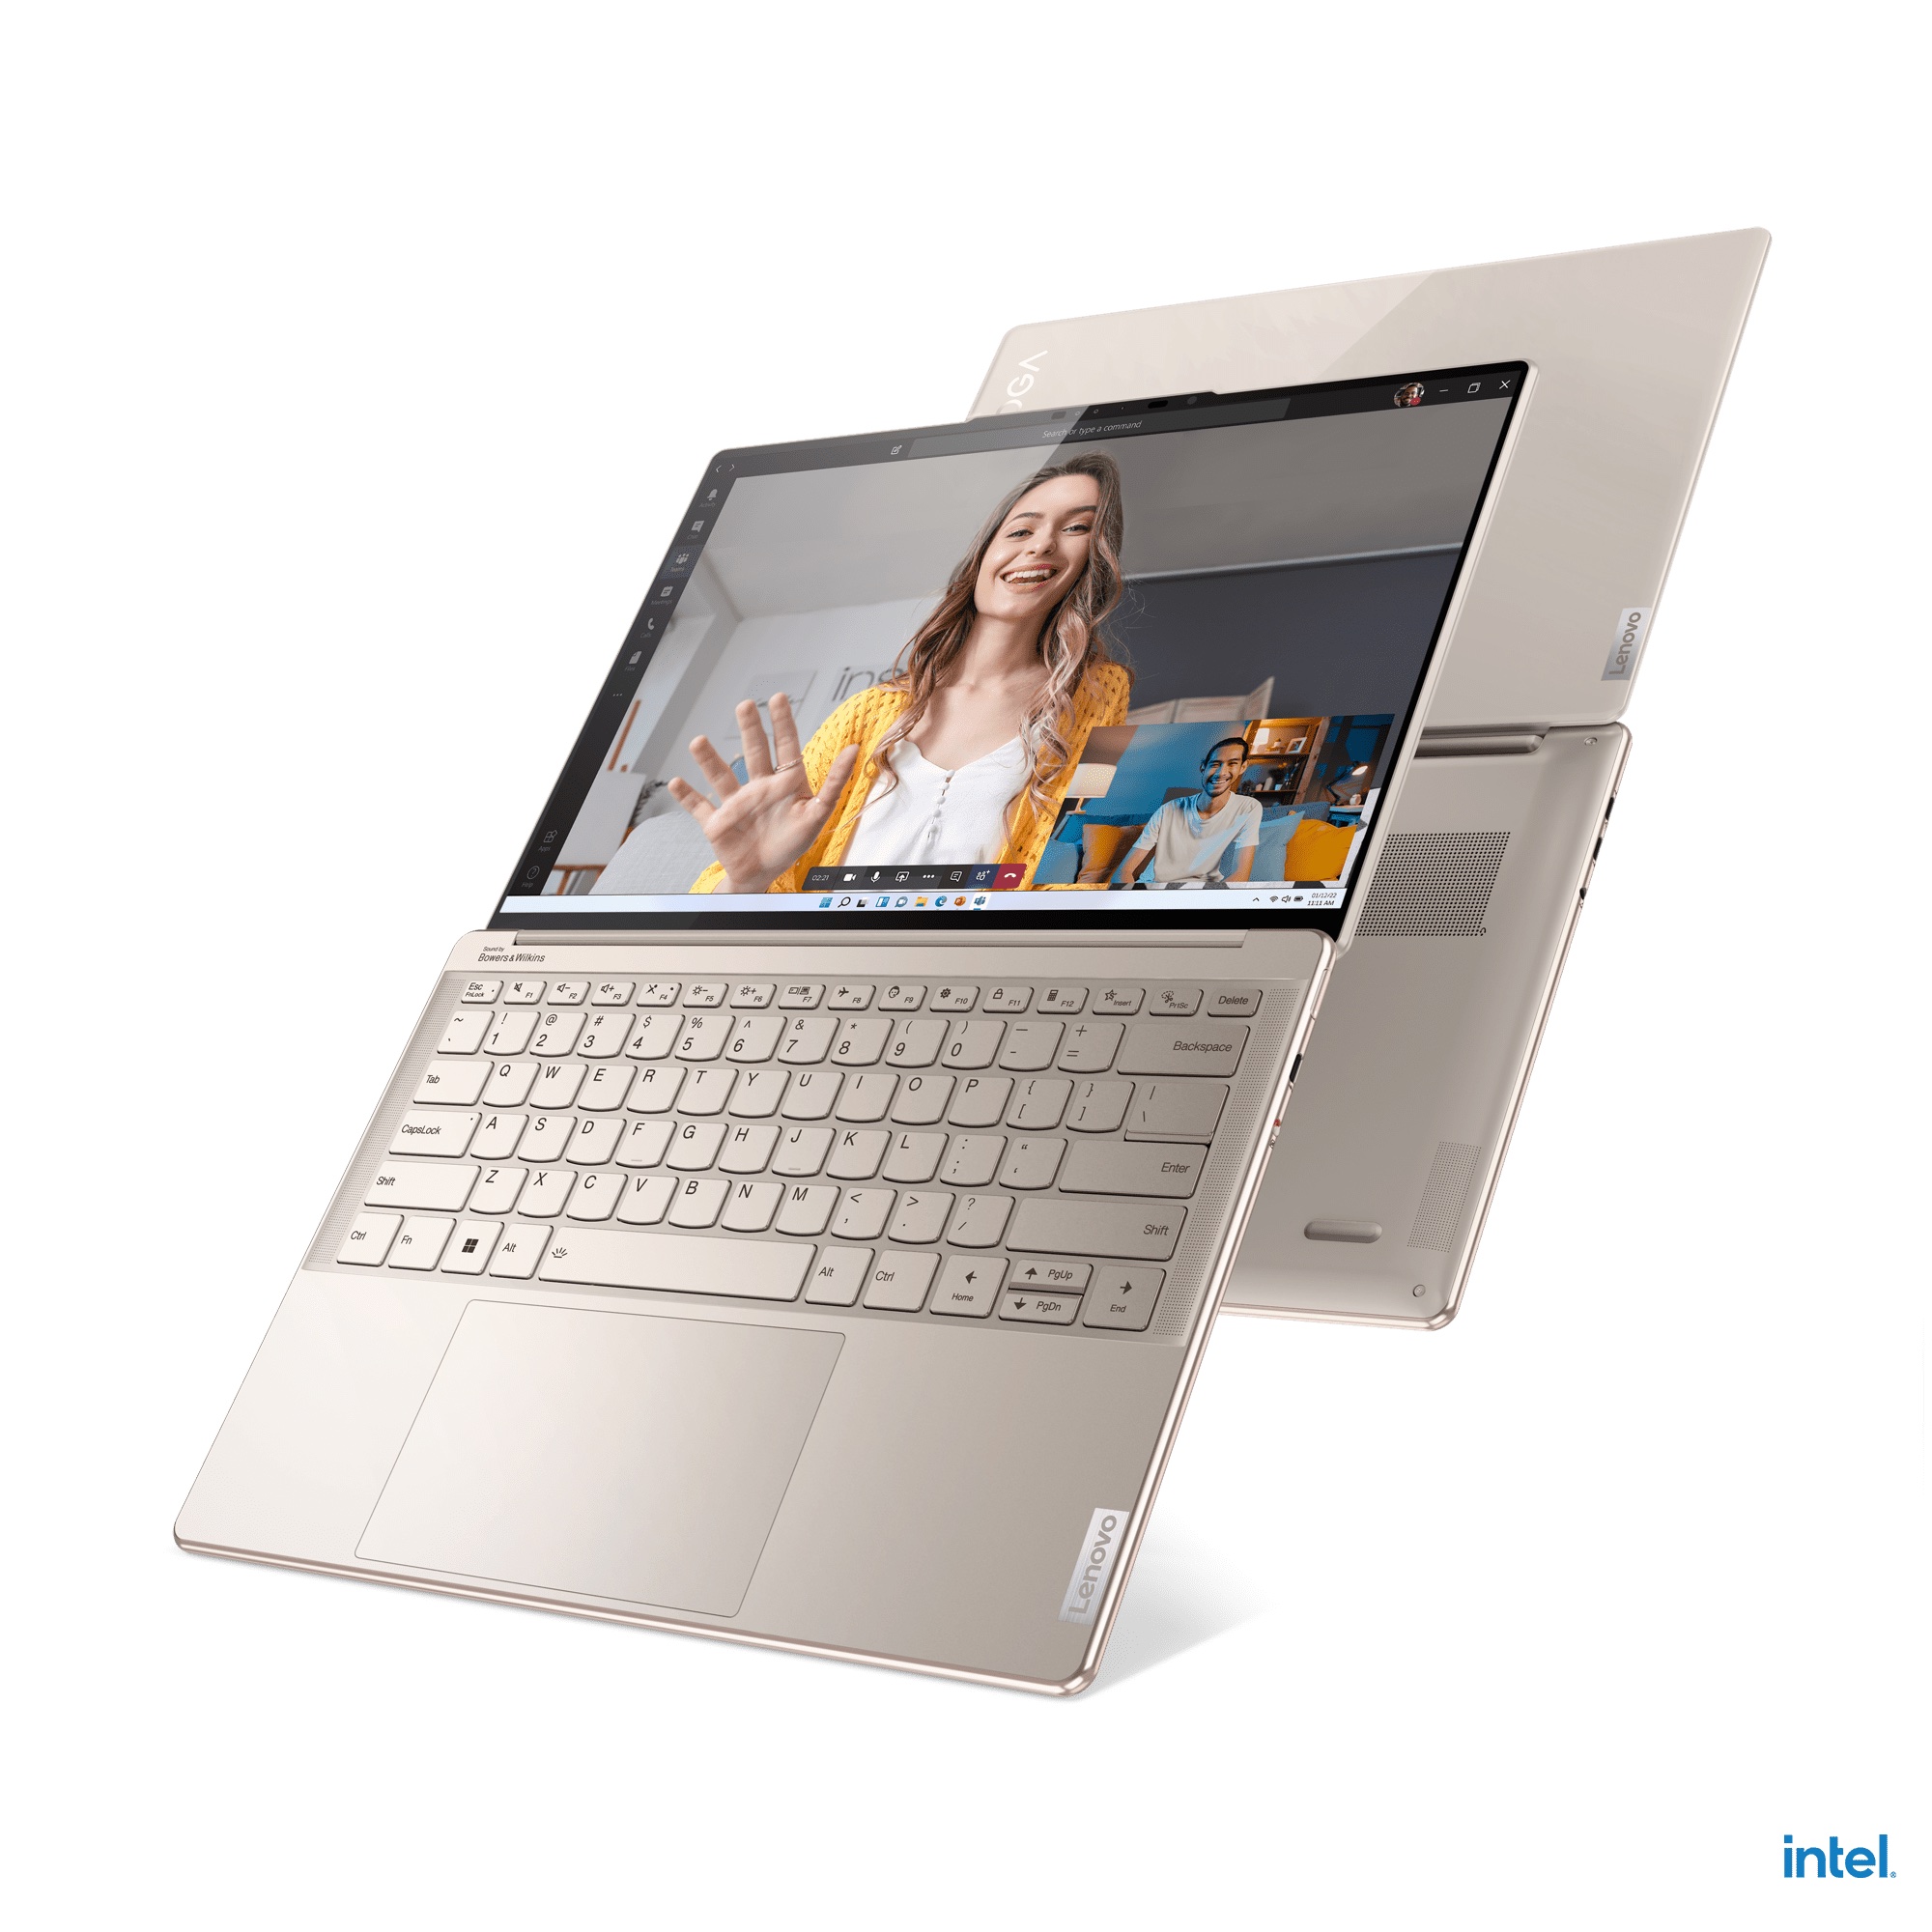 Lenovo công bố loạt máy tính Yoga thế hệ mới: Yoga Slim 9i, Yoga Slim 7i Pro X và Yoga Slim 7i Carbon